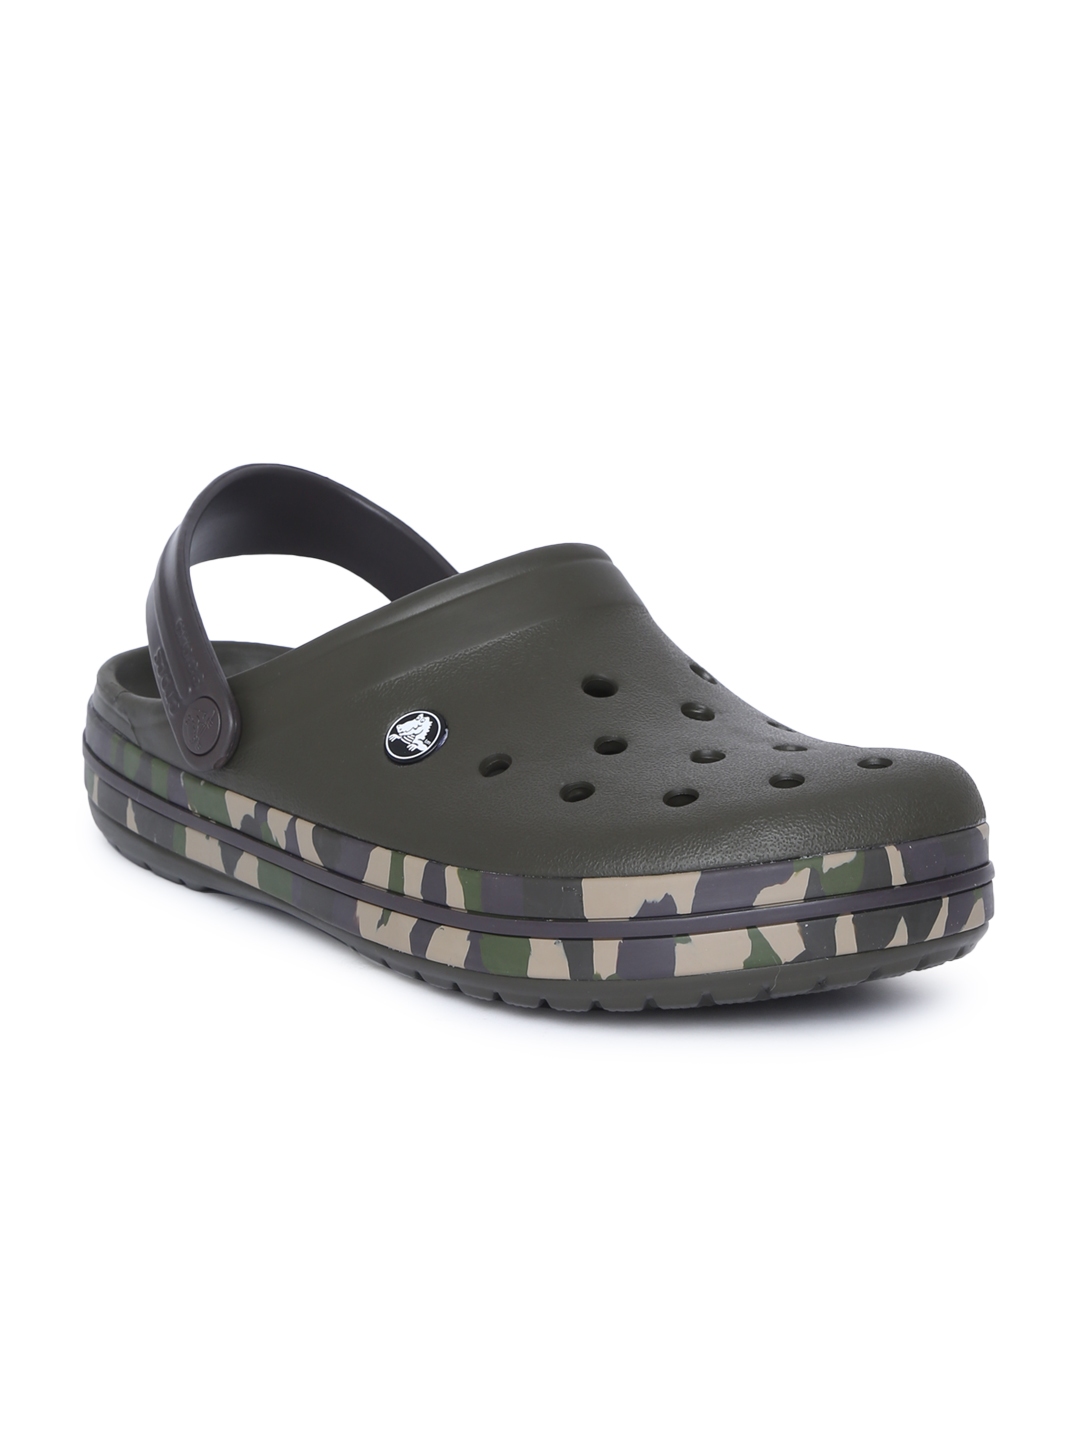 styling crocs